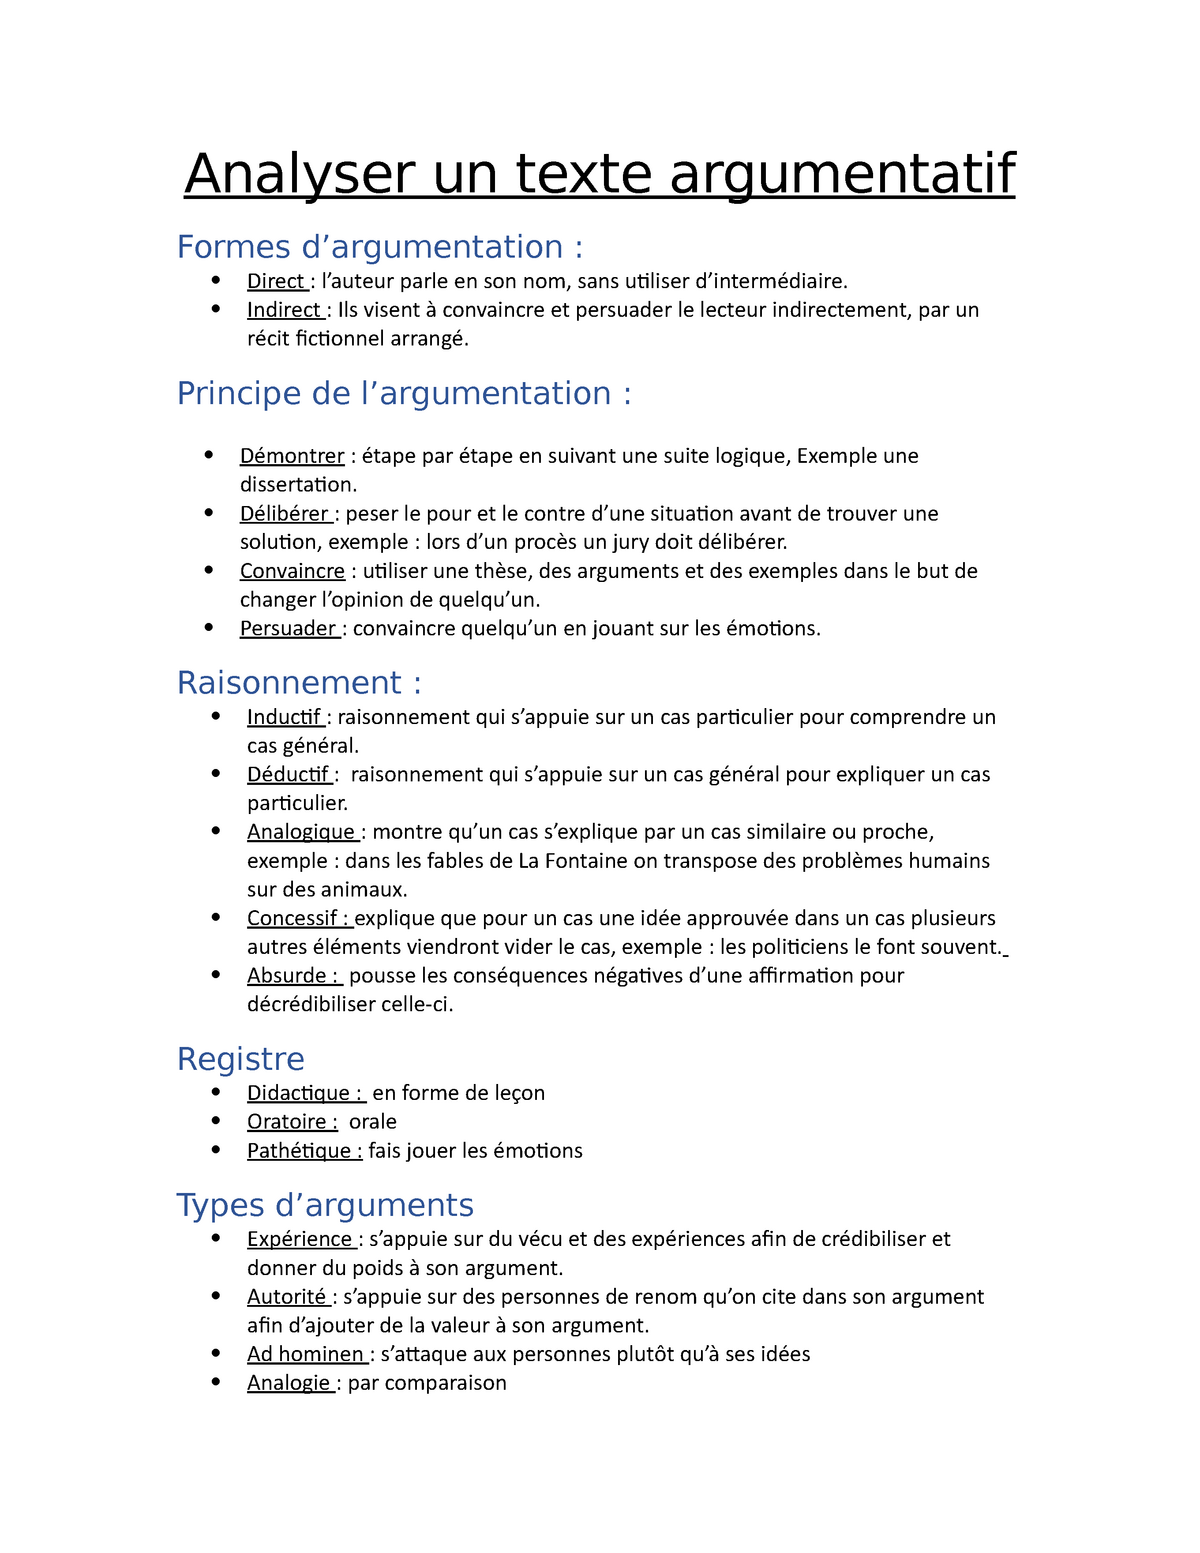 Analyser Un Texte Argumentatif Analyser Un Texte Argumentatif Formes D Argumentation Direct Studocu